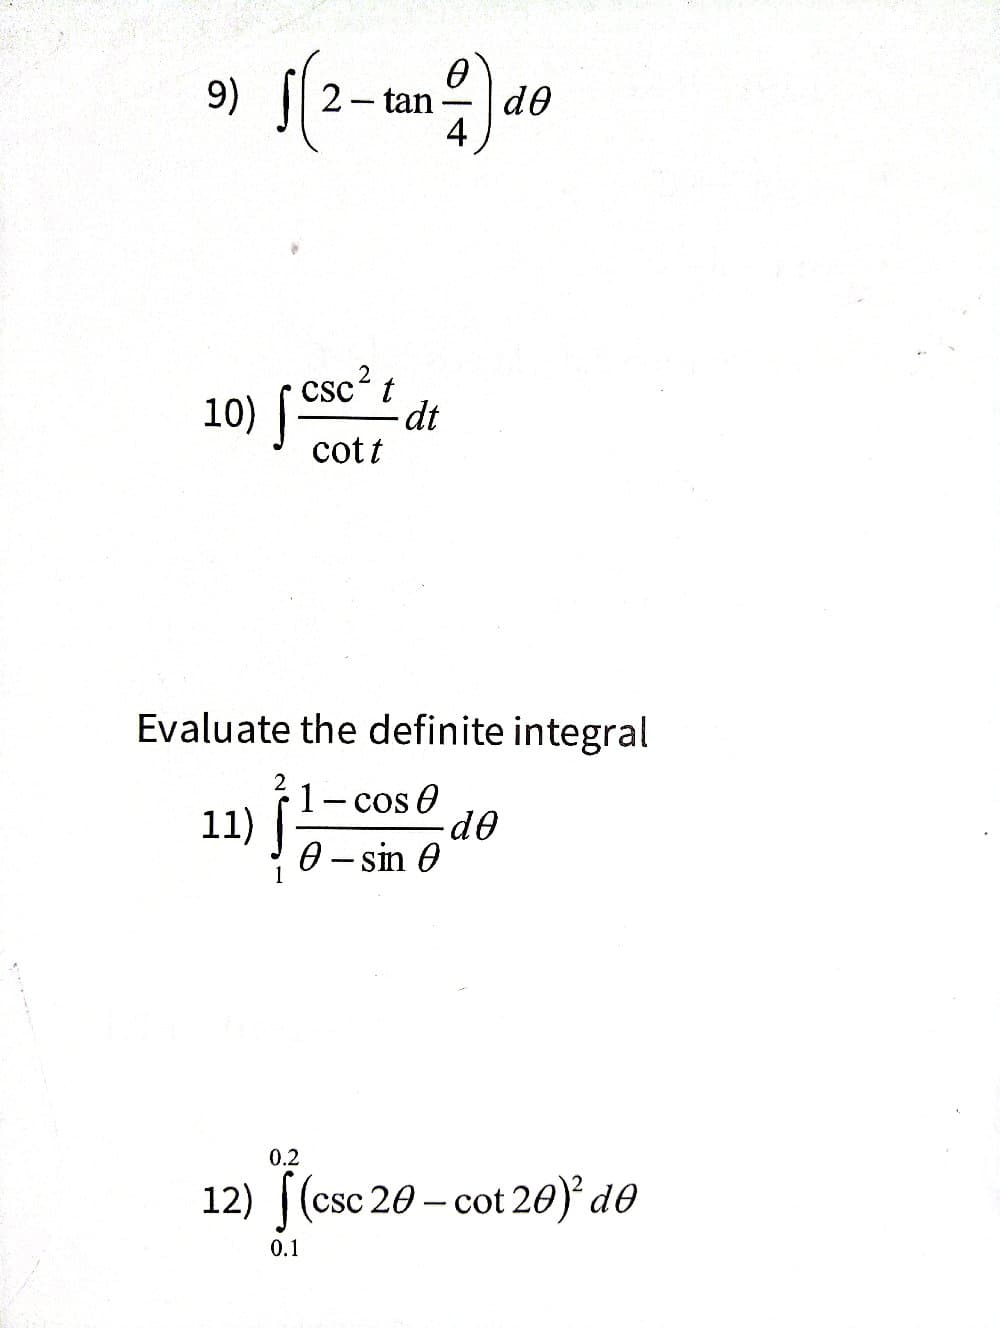 9)
√(2-tan 2) de
0
dᎾ
10) Csc²
{
cott
t
dt
Evaluate the definite integral
11)
1 - cos 0
0 - sin 0
.de
0.2
12) ((csc 20 - cot 20)² də
20-cot
0.1